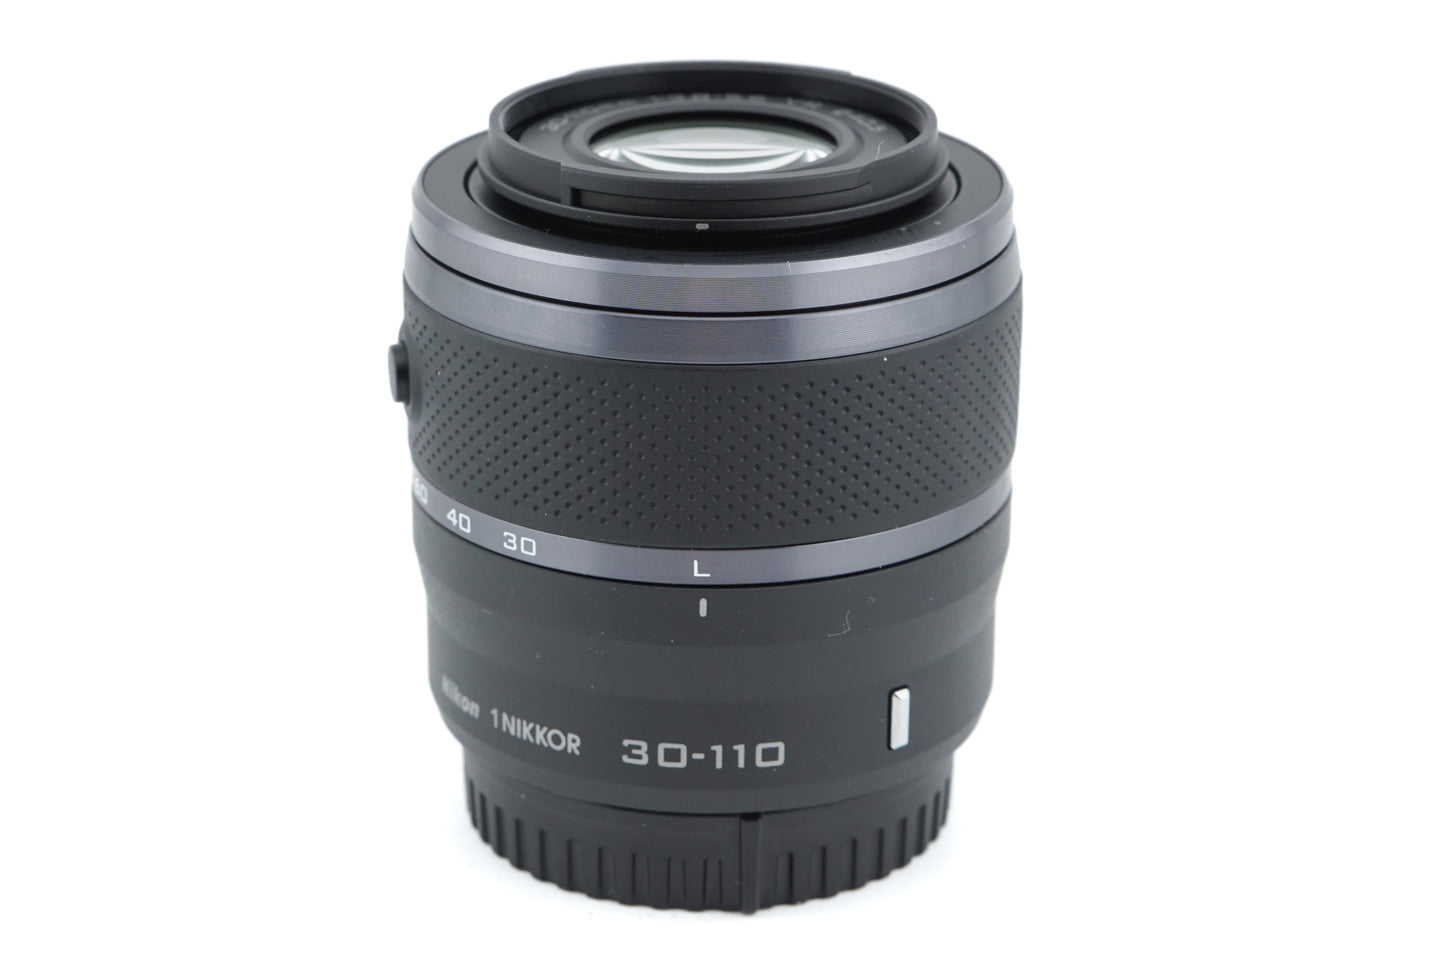 Nikon 30-110mm f3.8-5.6 VR Nikkor 1 - Lens